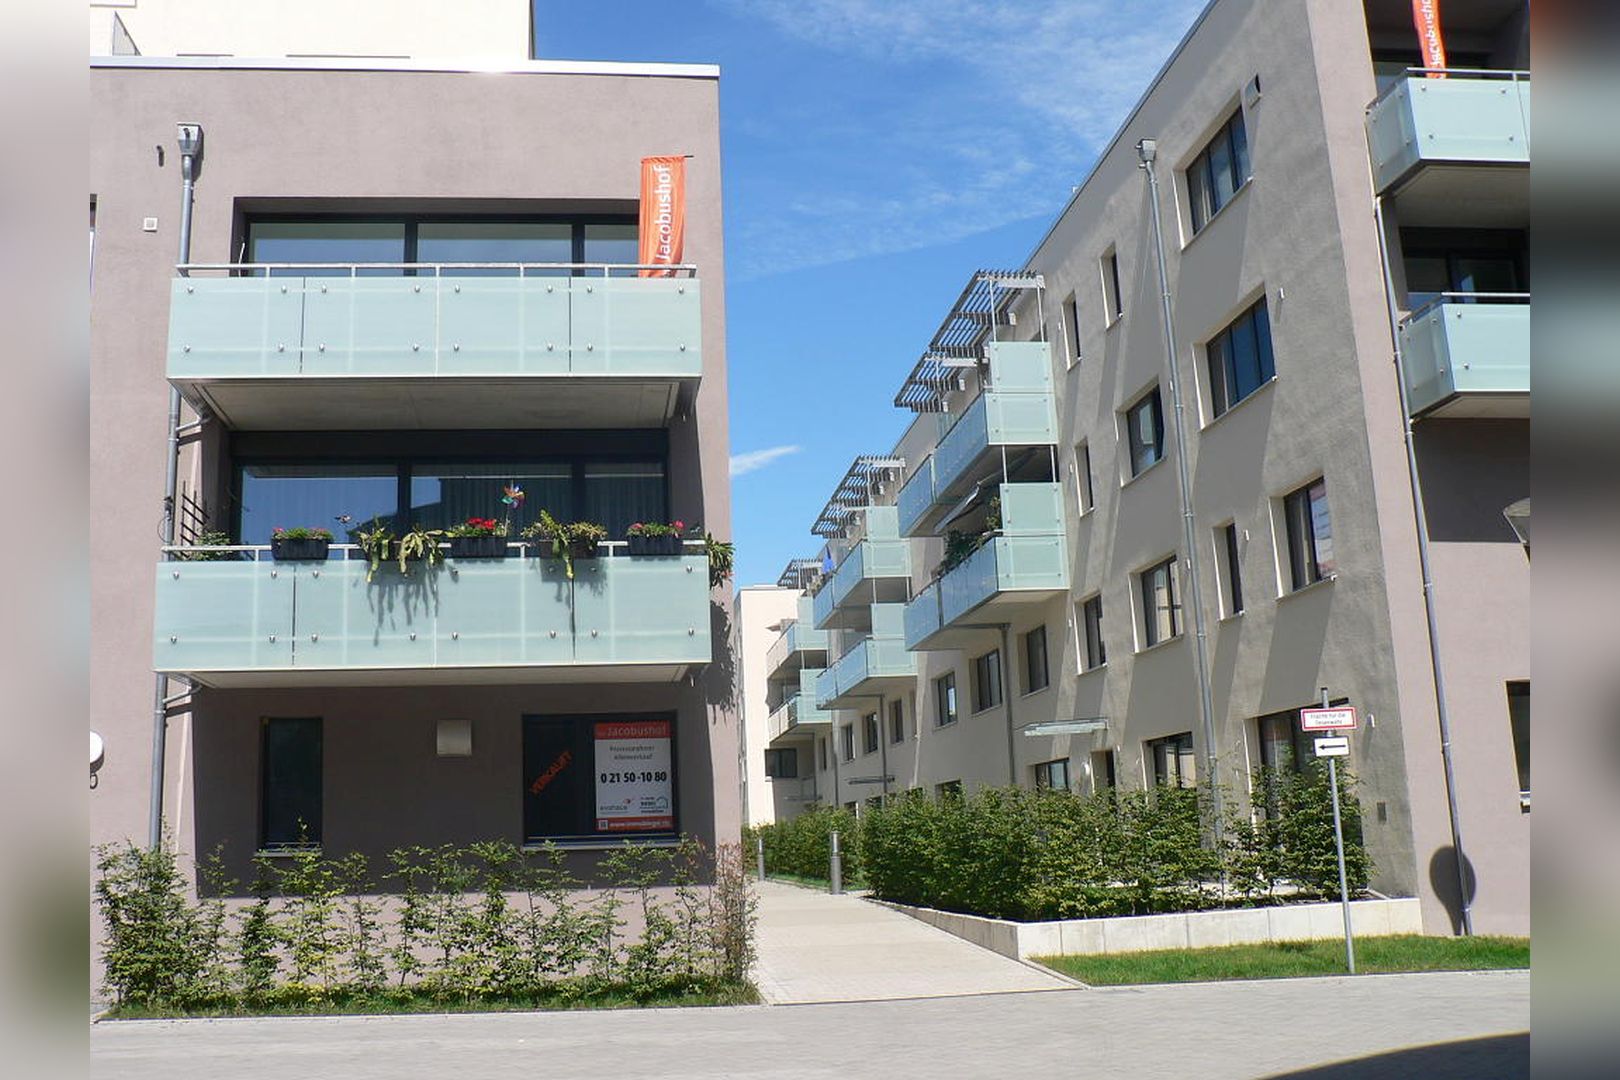 Immobilie Nr.Hilden WE 09 - 4-Zimmer-Garten-Maisonette-Wohnung mit Garten, Aufzug und TG-Stellplatz - Bild 2.jpg